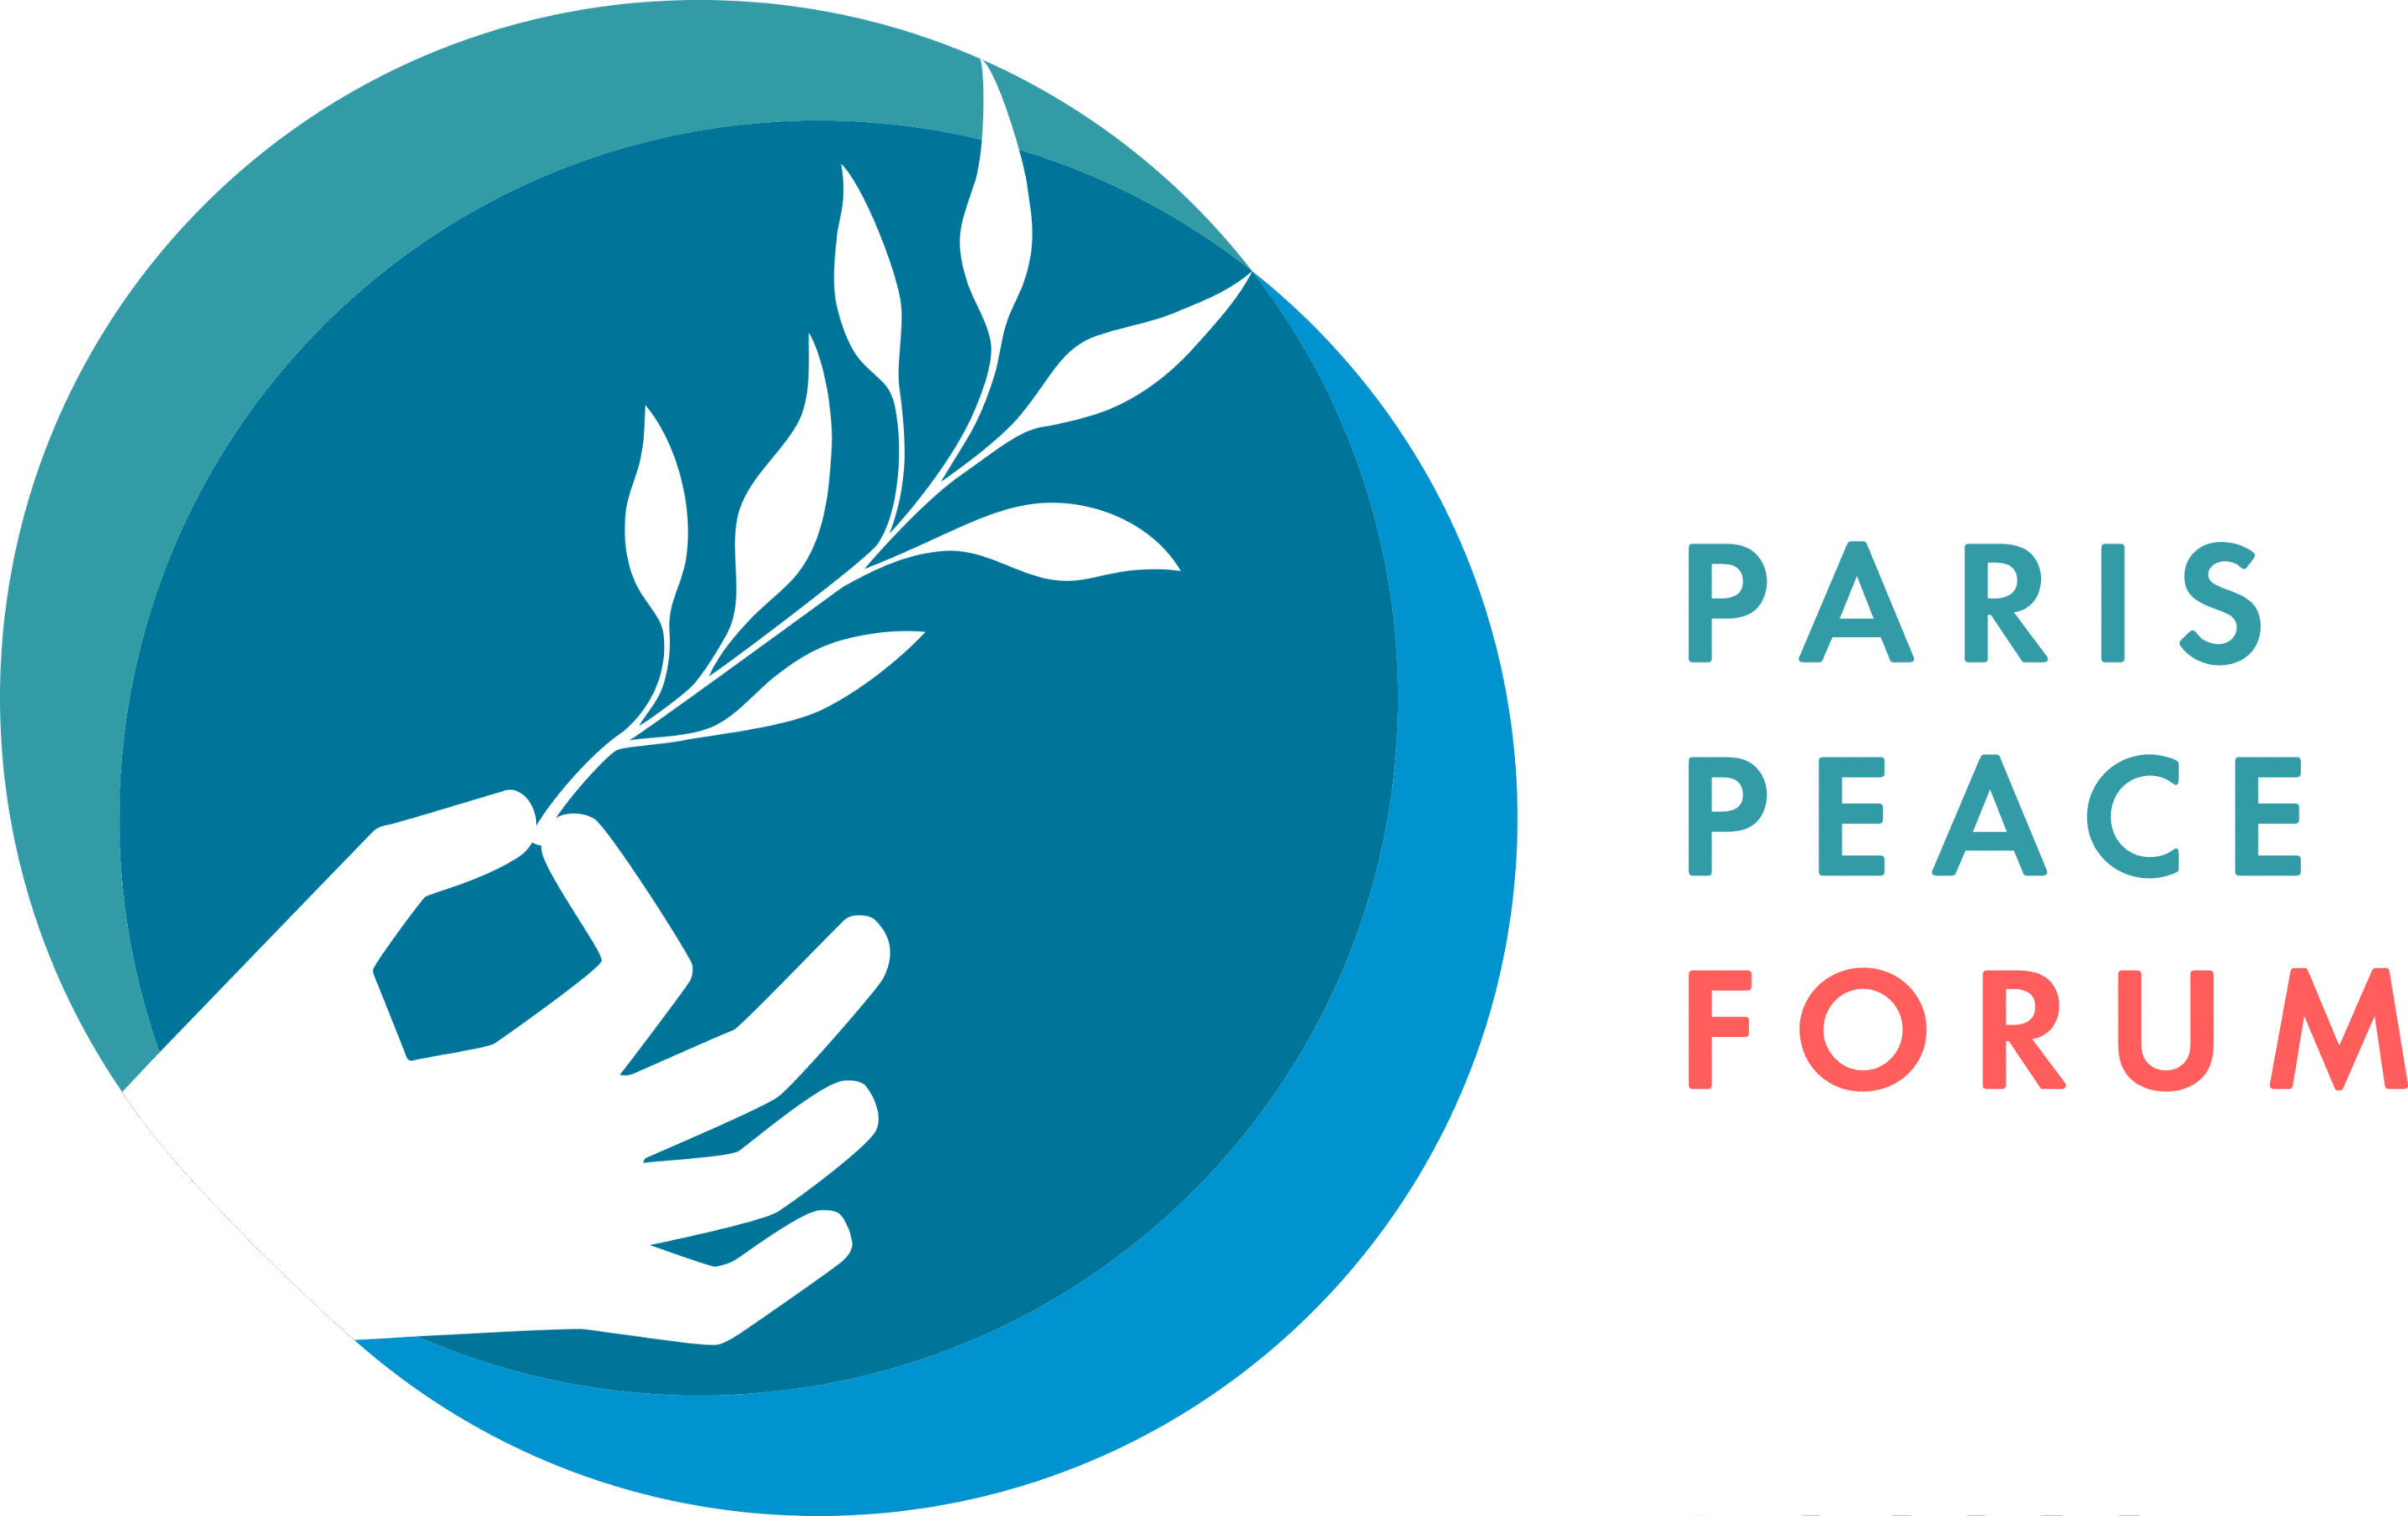 The Paris Peace Forum